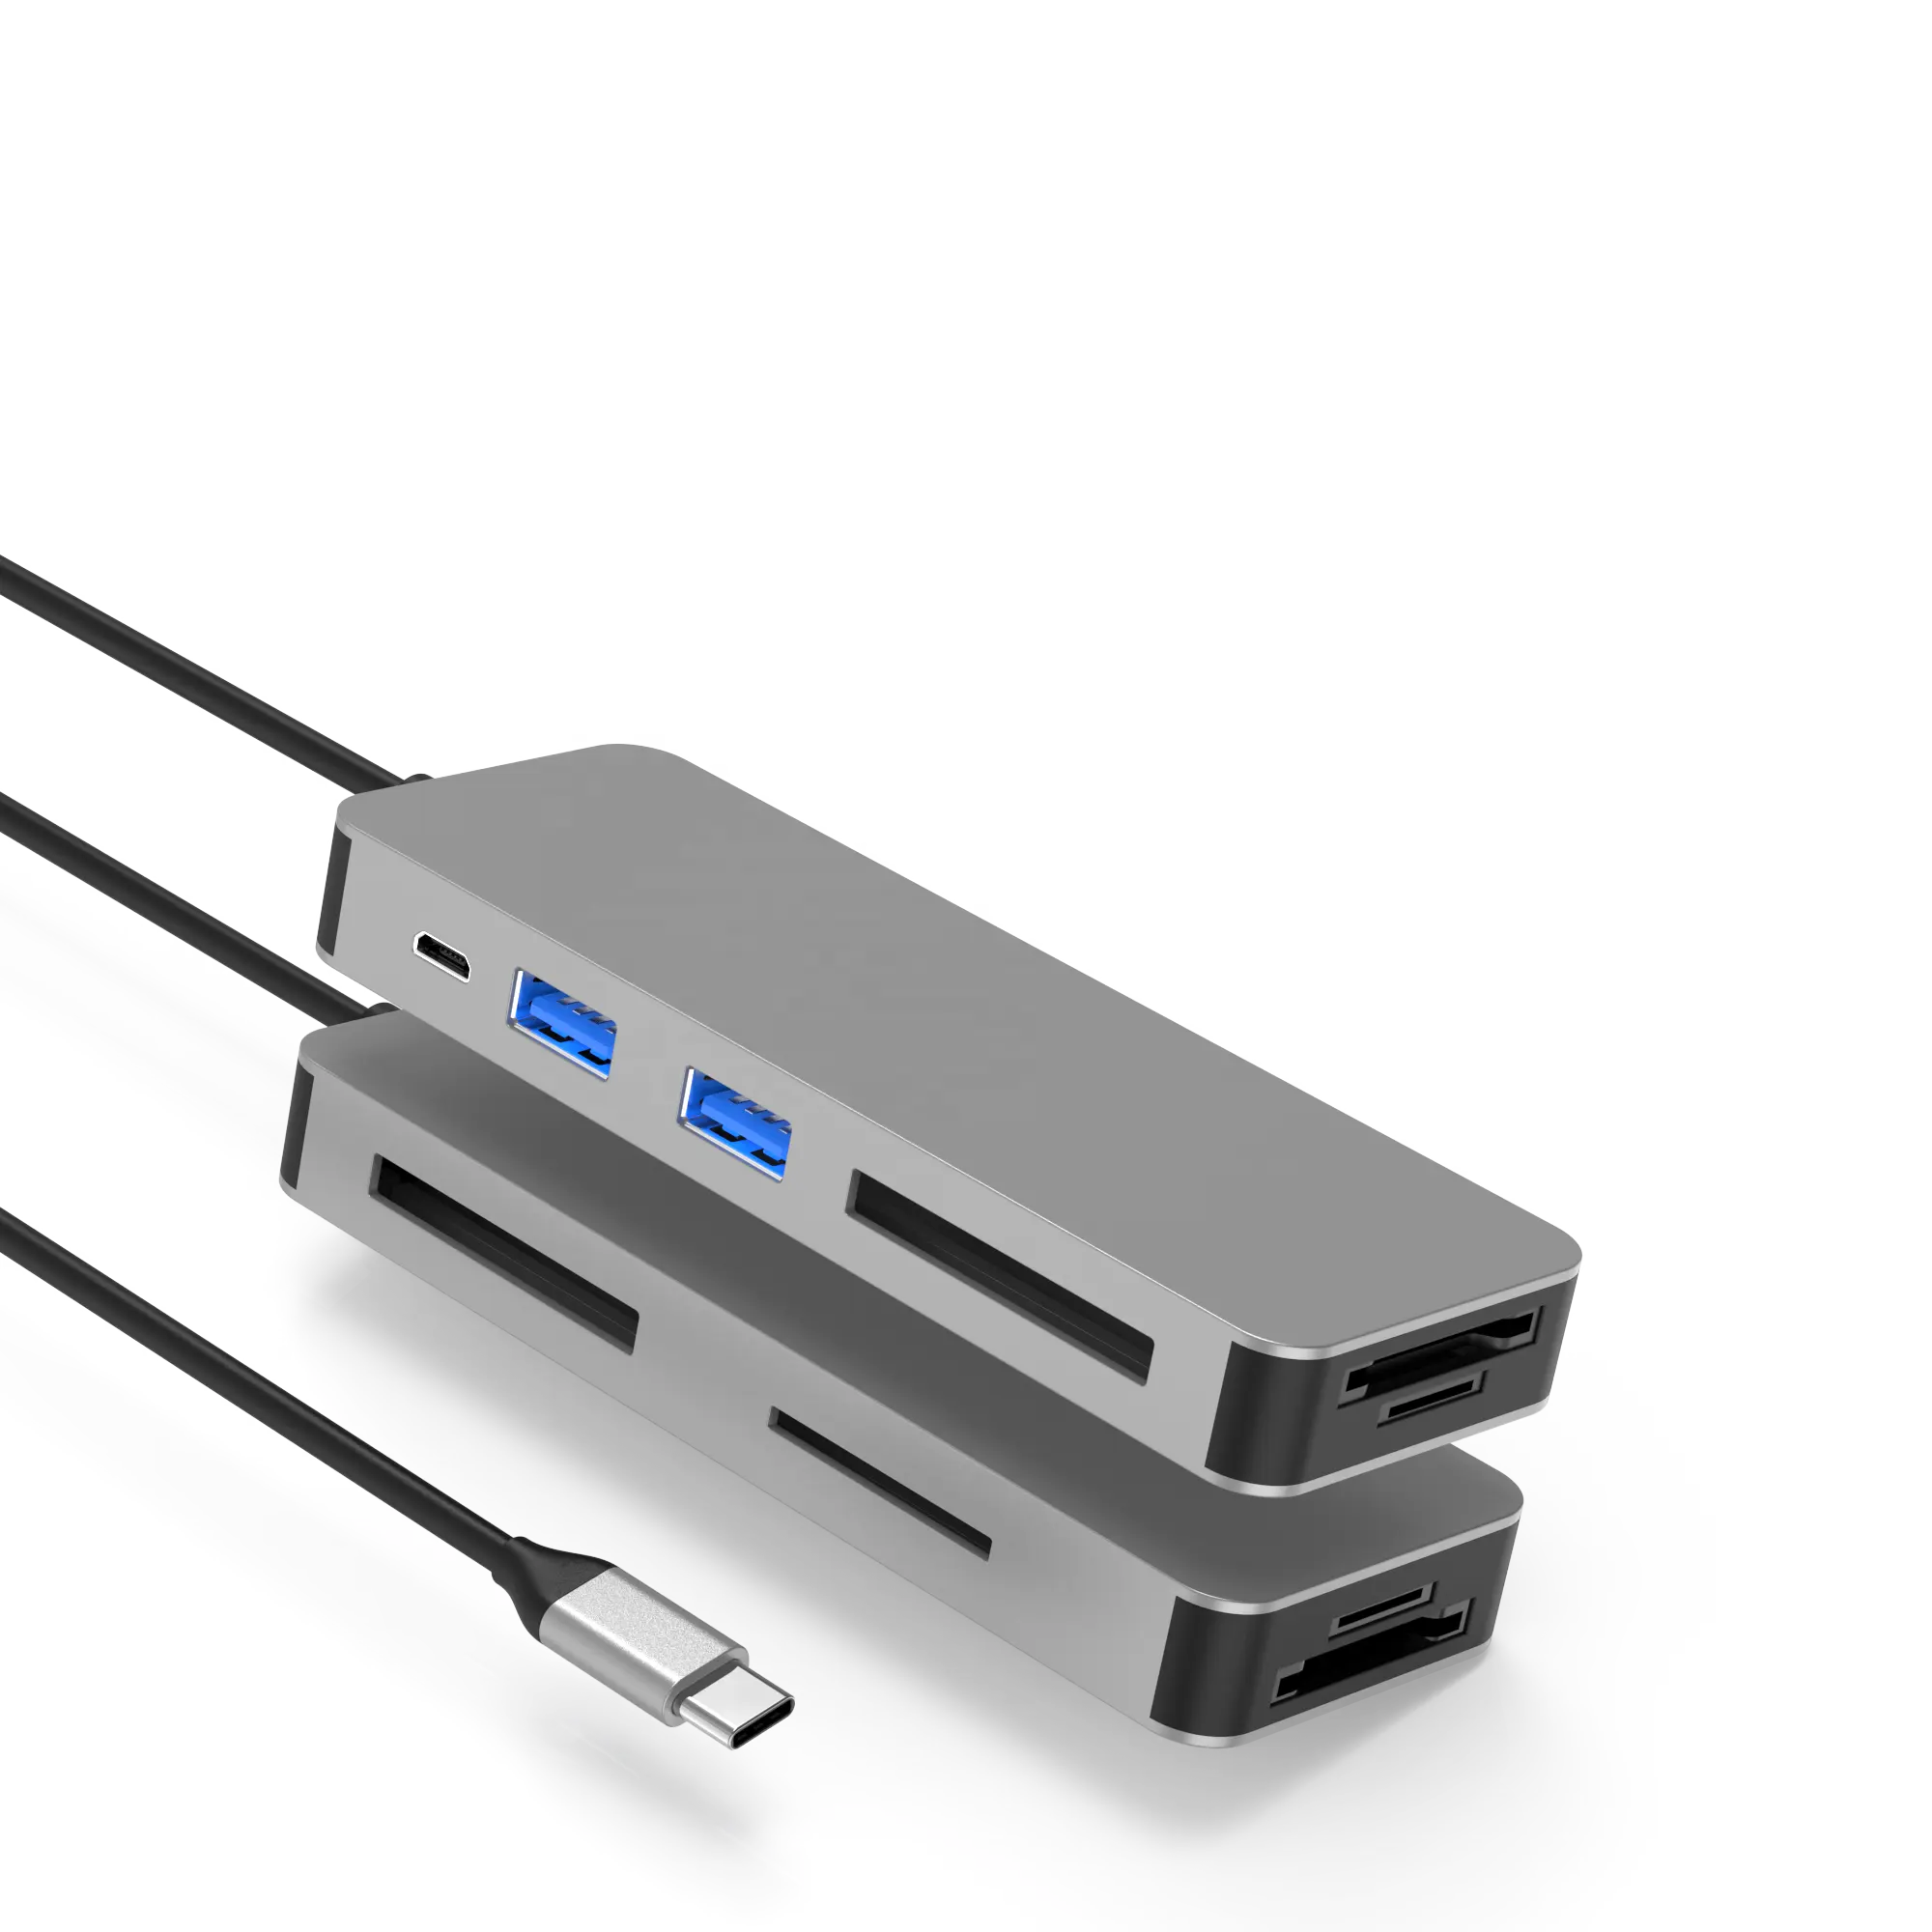 Dapatkan konektivitas utama dengan grosir 8 in 1 Antarmuka Transfer hub: USB-C 5V3A, 2 x USB 3.0 (5 Gb/s), XQD/MS/CF/SD/TF